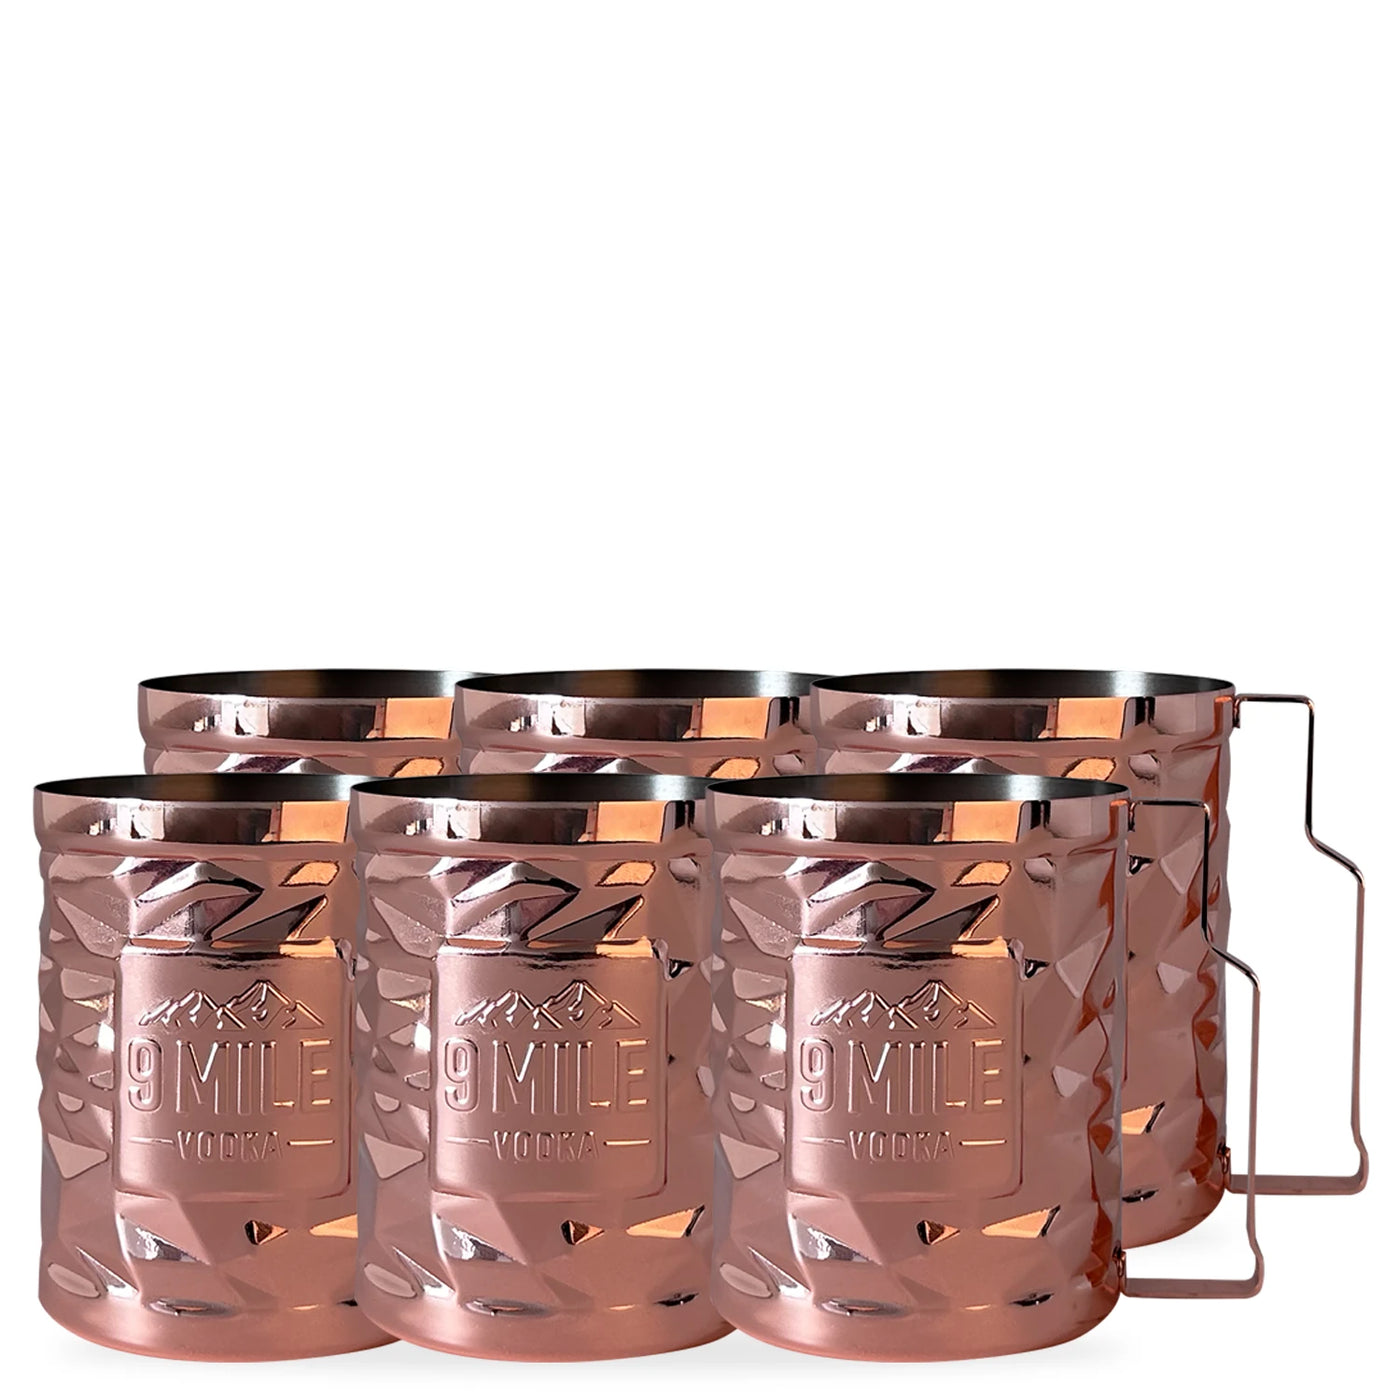 9 MILE Vodka Copper Mug Set